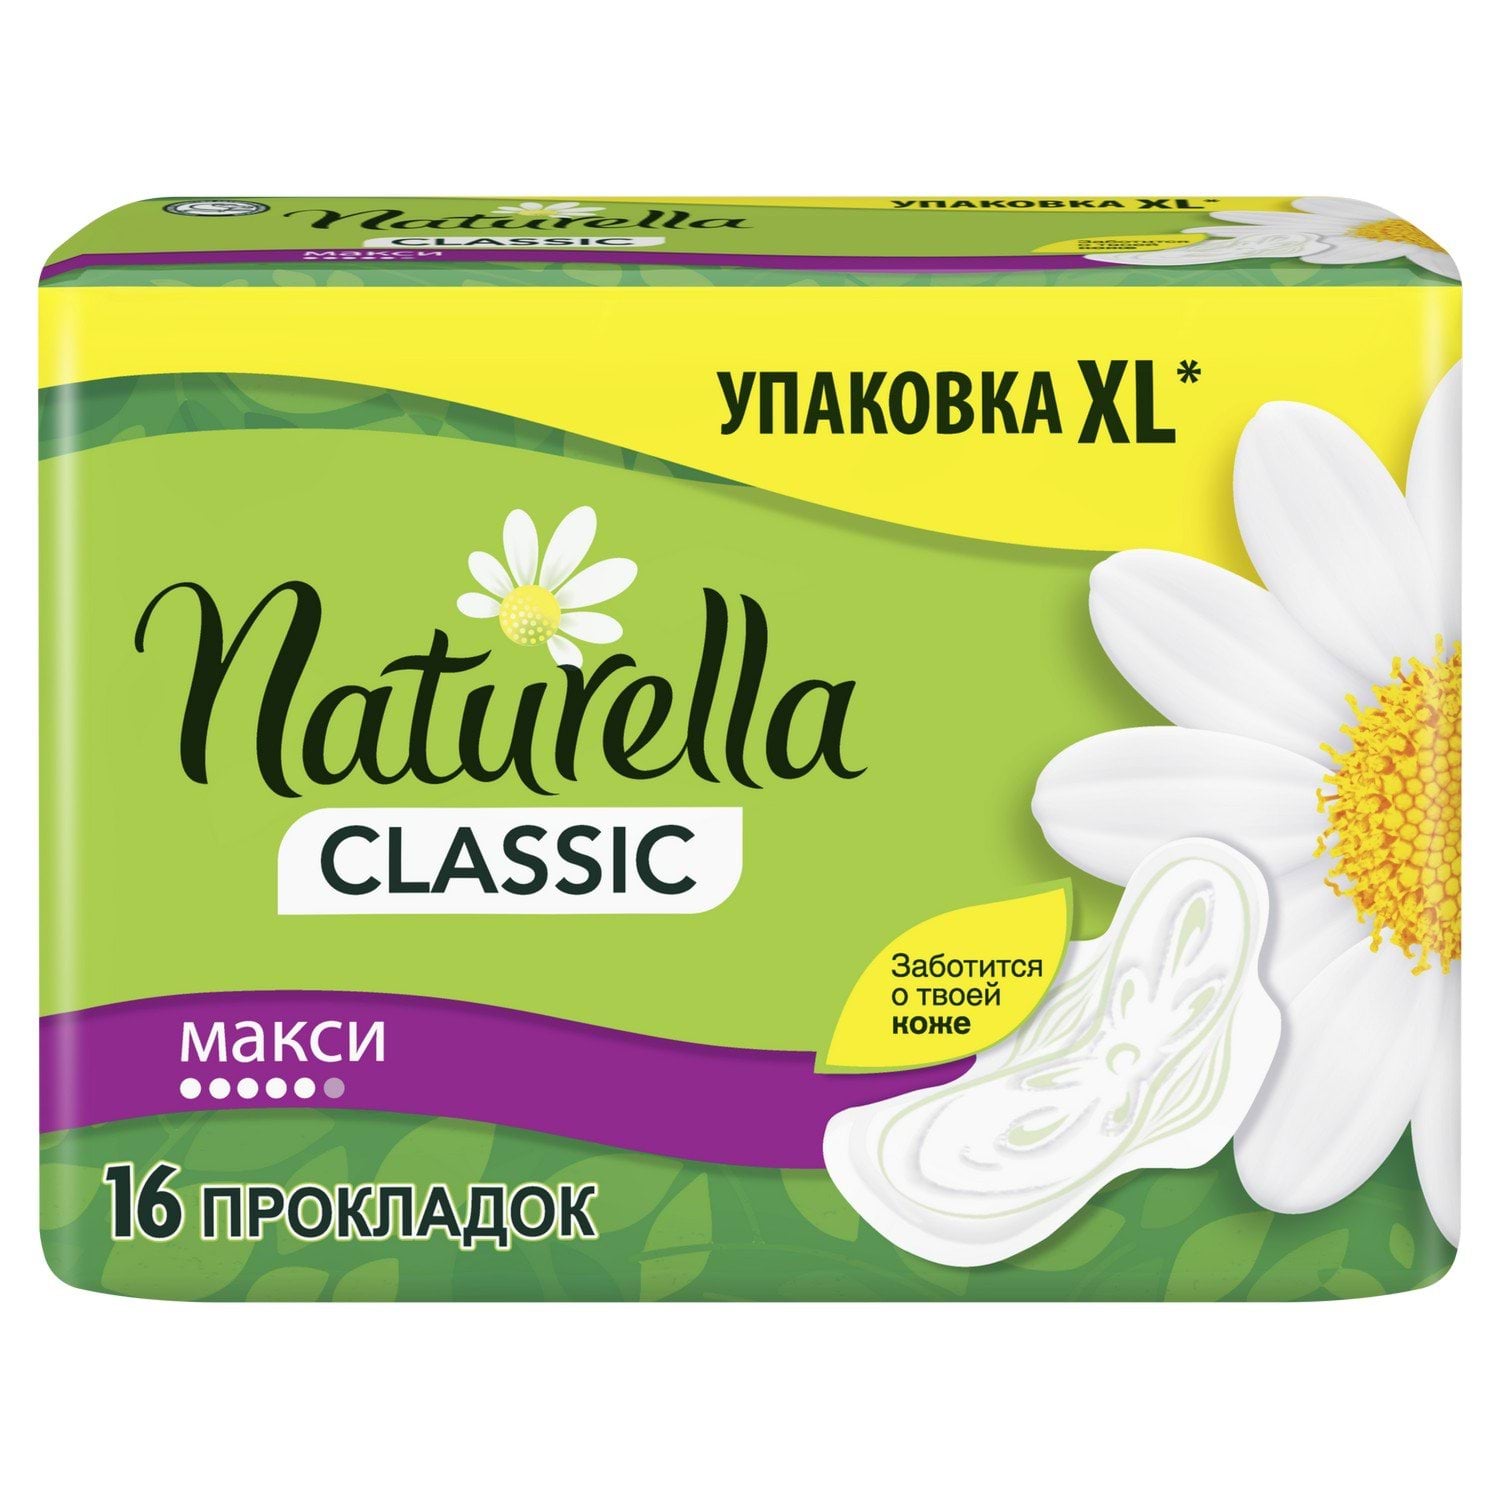 Прокладки для критических дней Naturella Classic Maxi, 16 шт